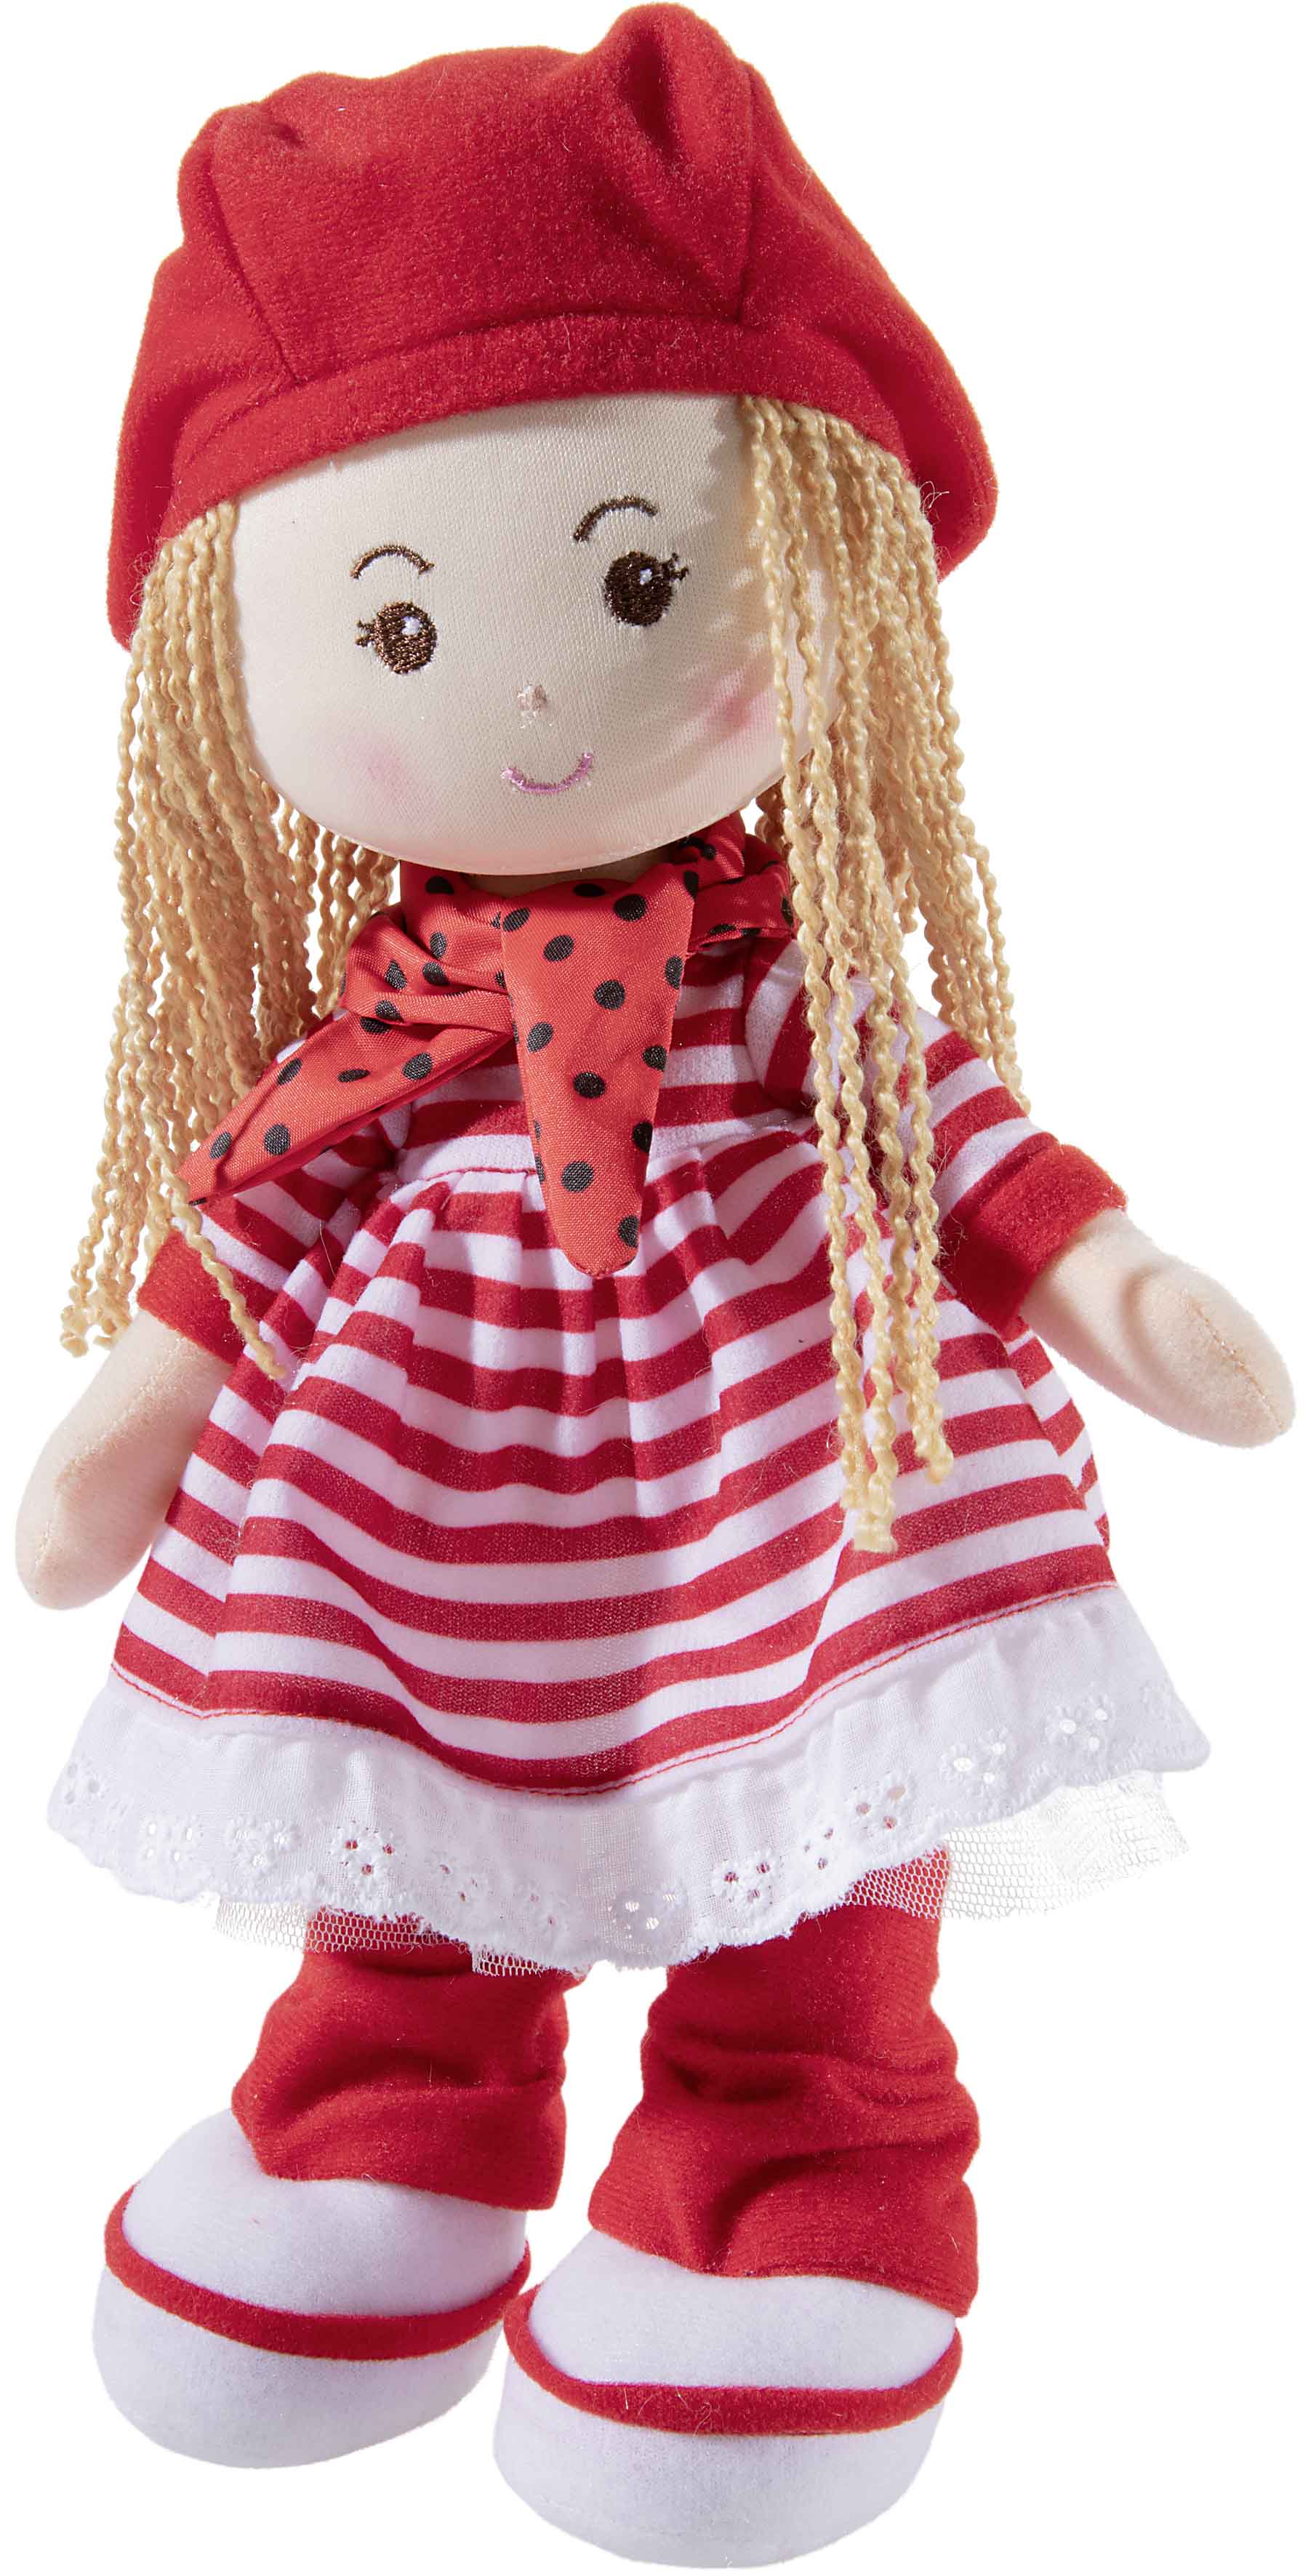 Heunec Poupetta Käferkind mit blonden Haaren, roter Mütze und rot-weiß gestreiftem Kleidchen